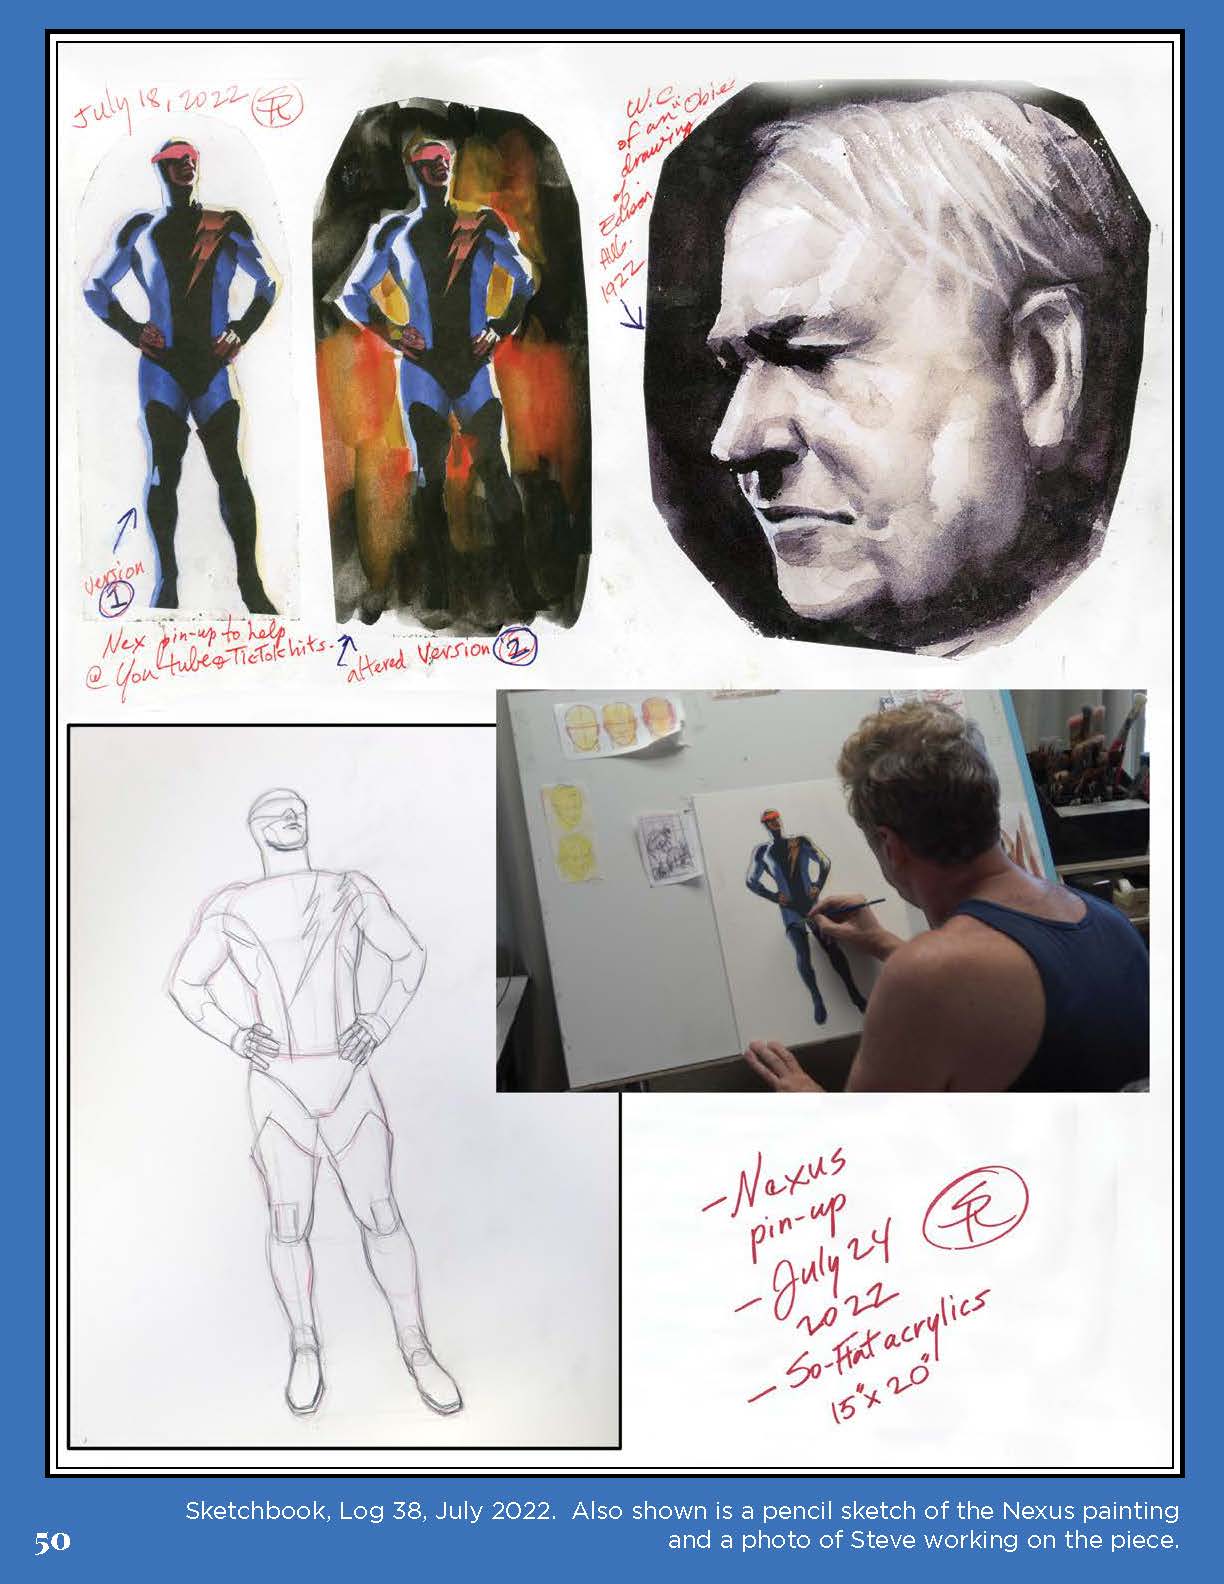 2023 Sketchbook X-Men Cover "A"